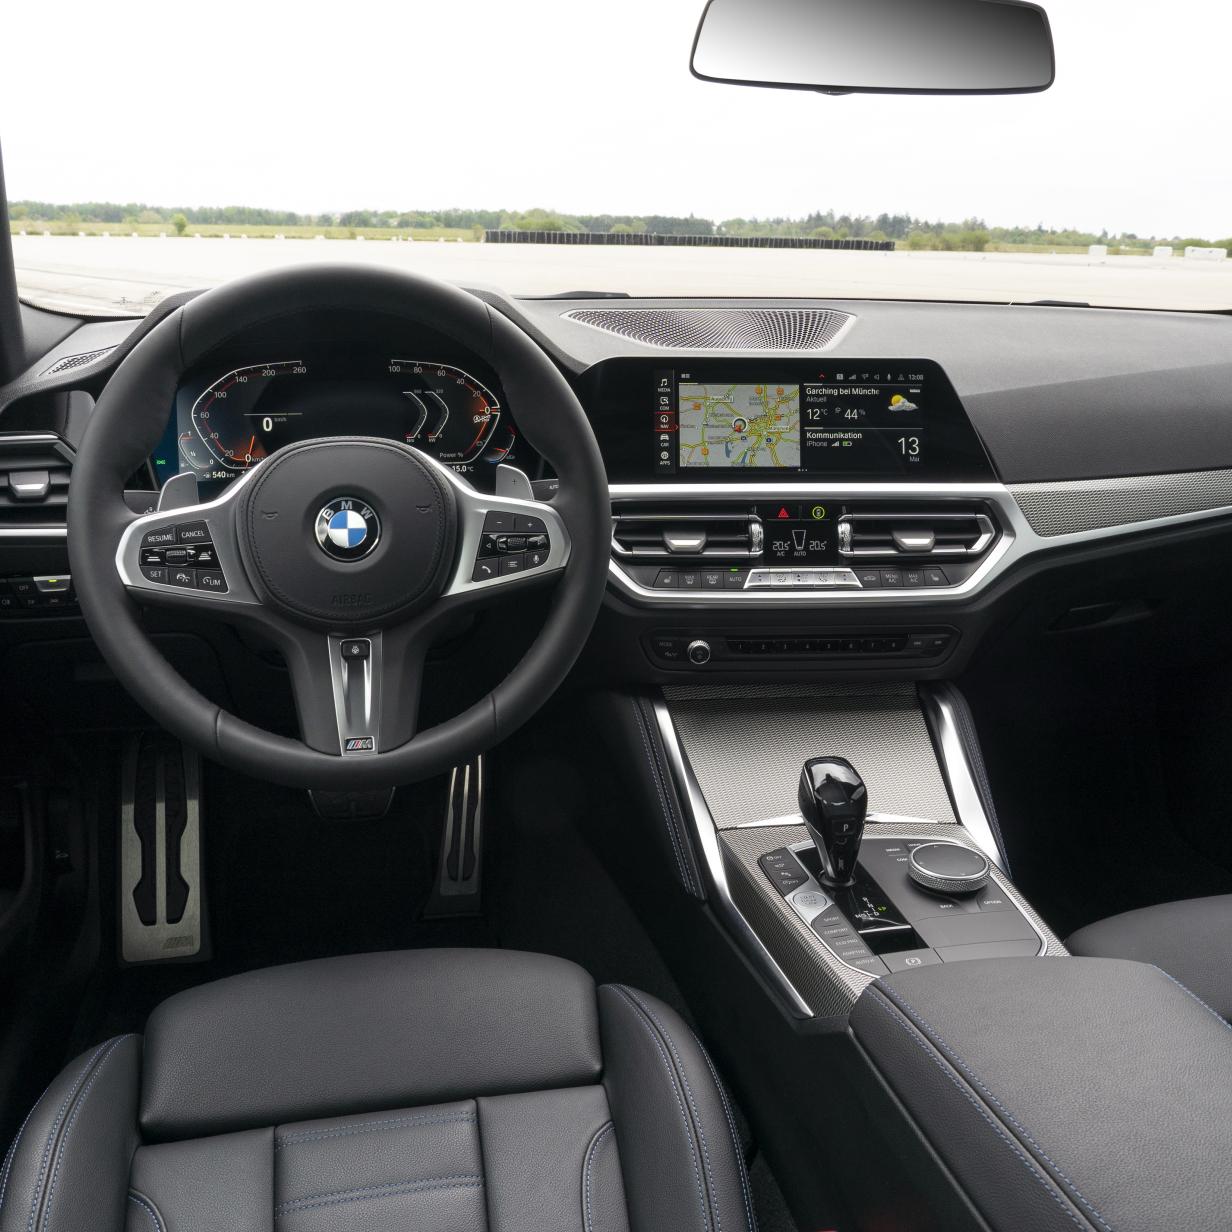 Sitzheizung im Abo - BMW mit neuem Geschäftsmodell